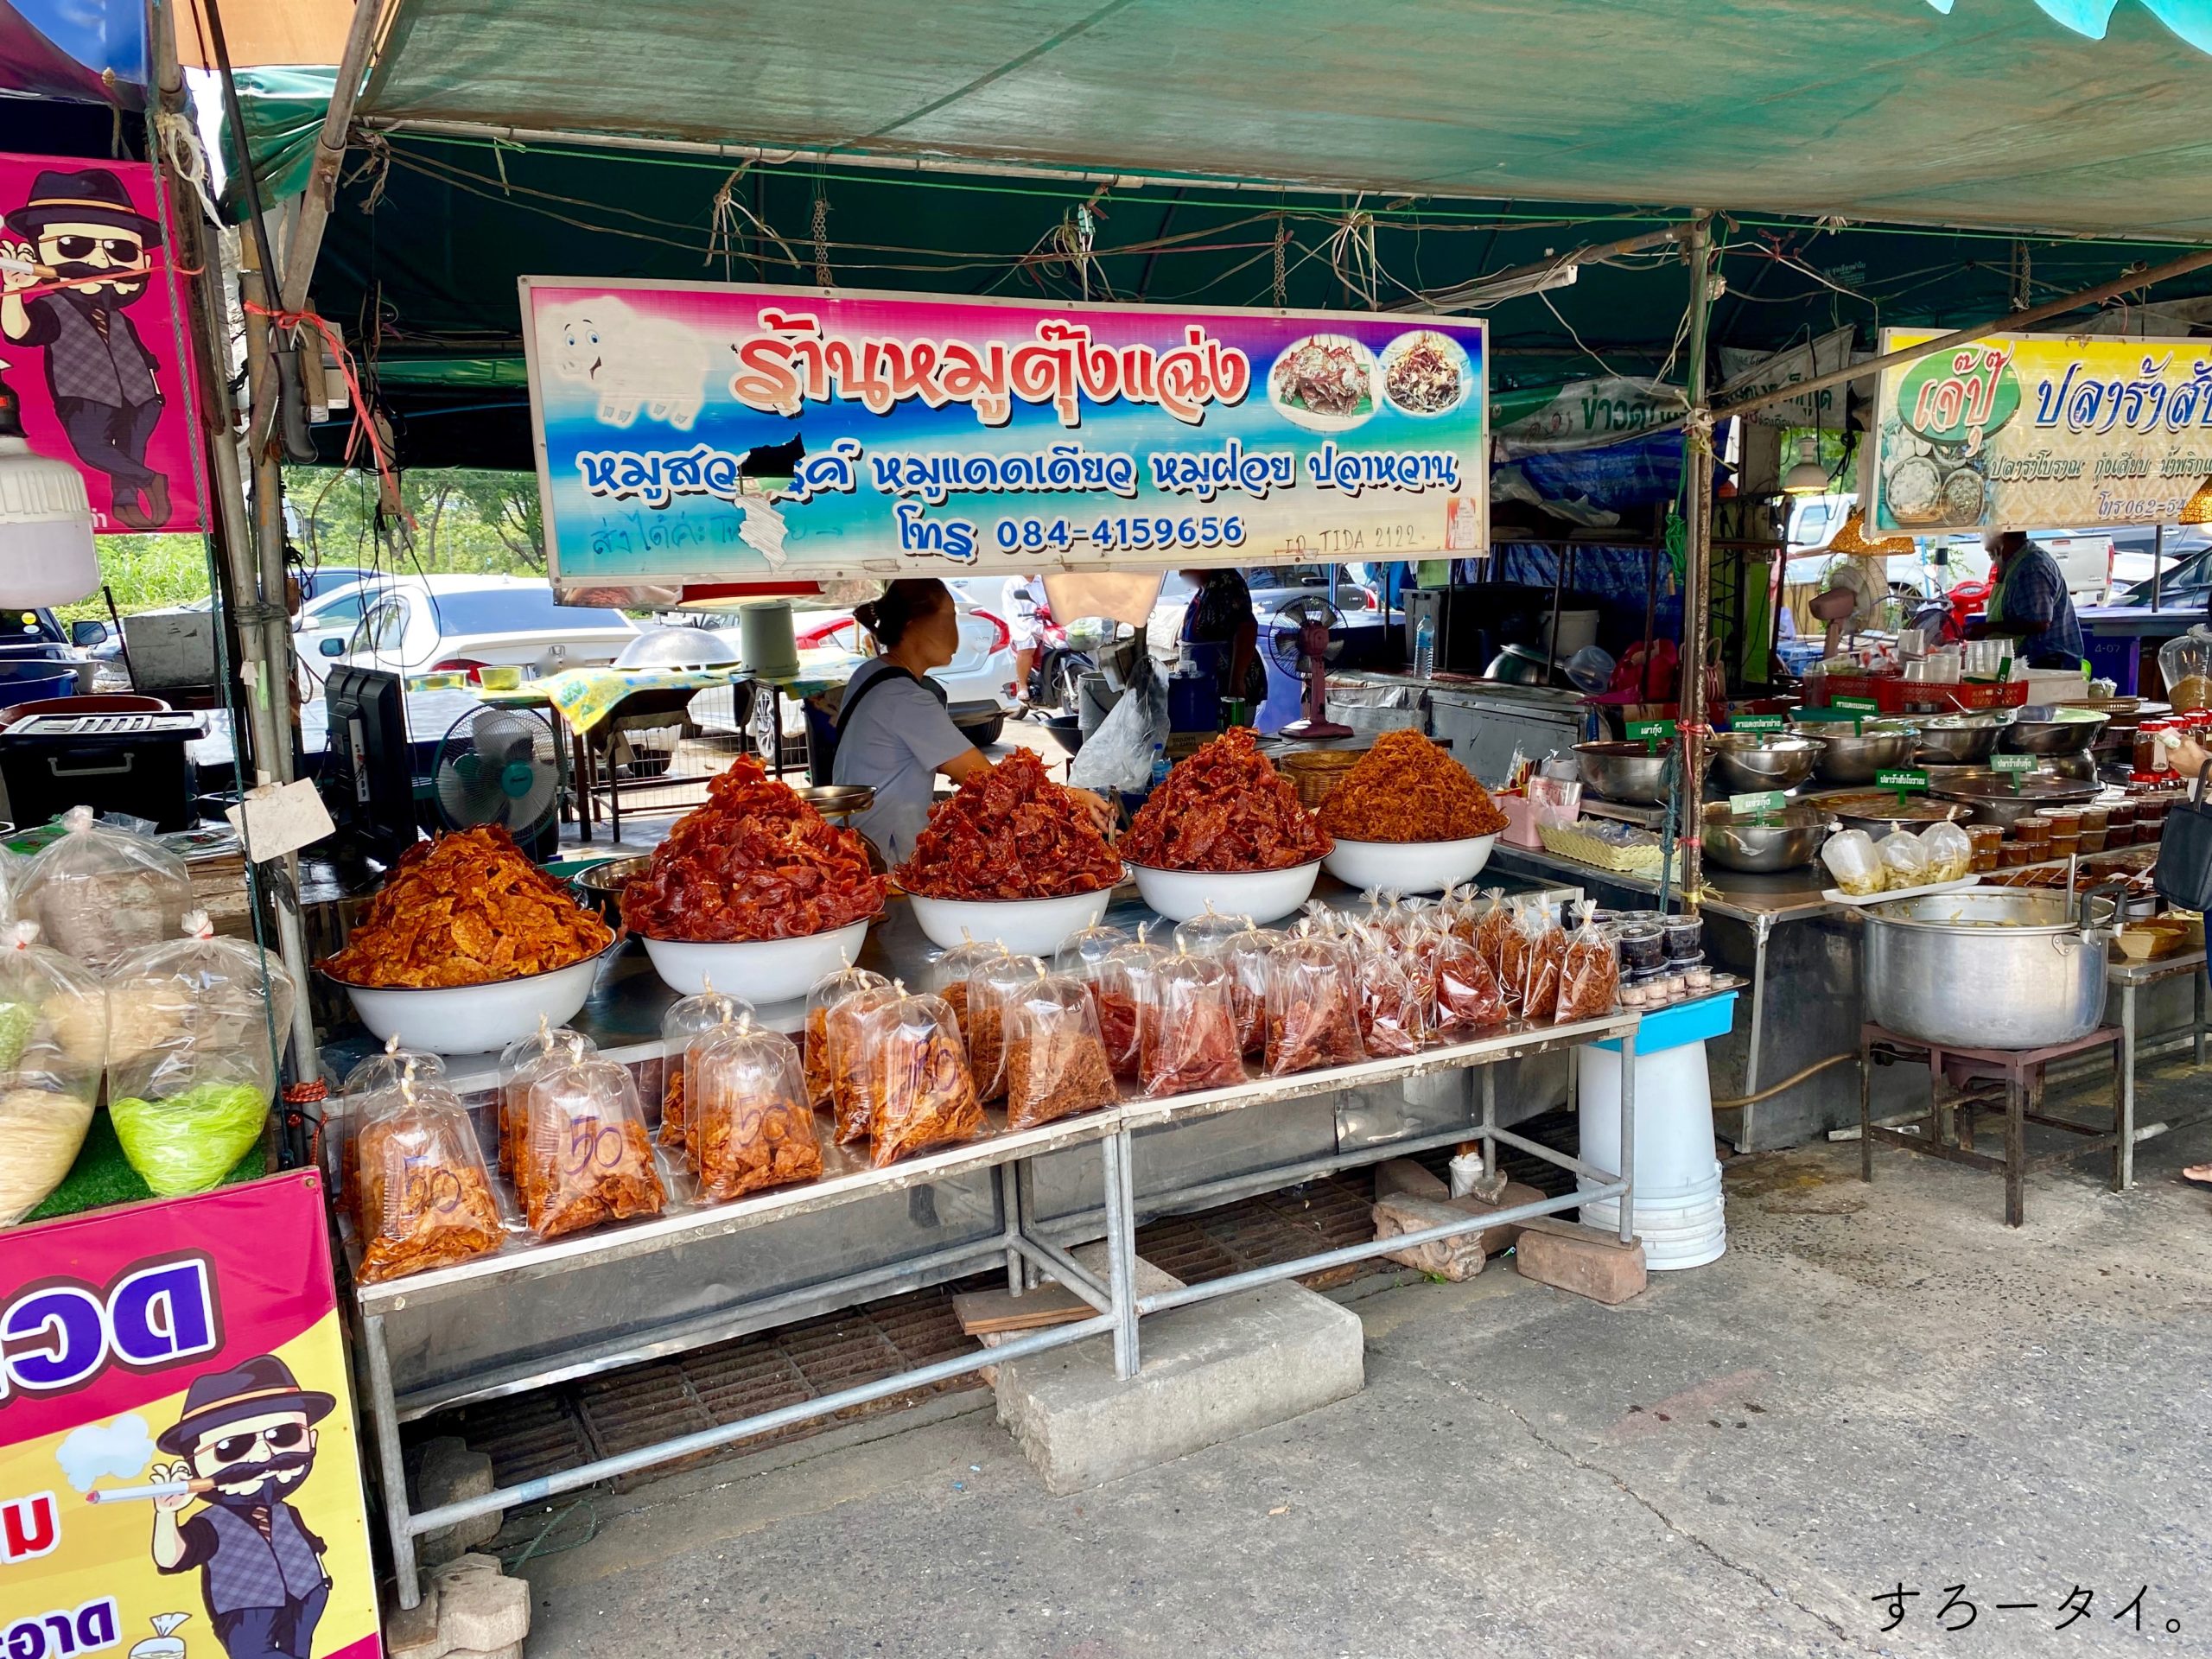 ปลาช่อนเผาเกลือ　Popaokungphao　ป.เป้ากุ้งเผา　ตลาดกลางเพื่อการเกษตร